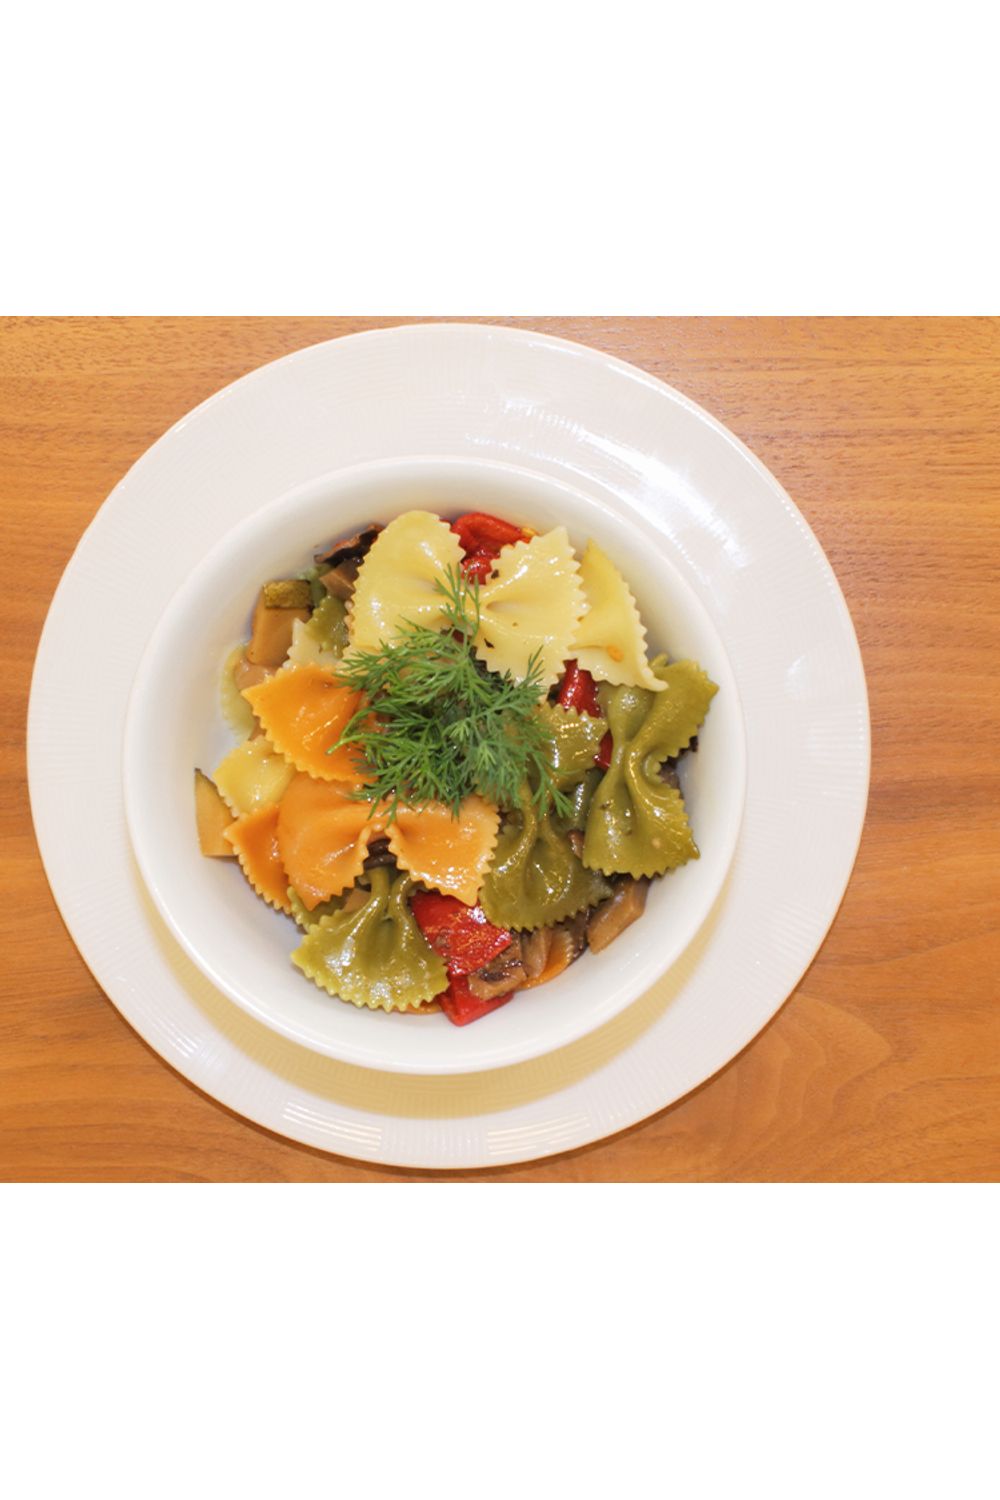 salada-de-farfalle-tricolor-com-legumes